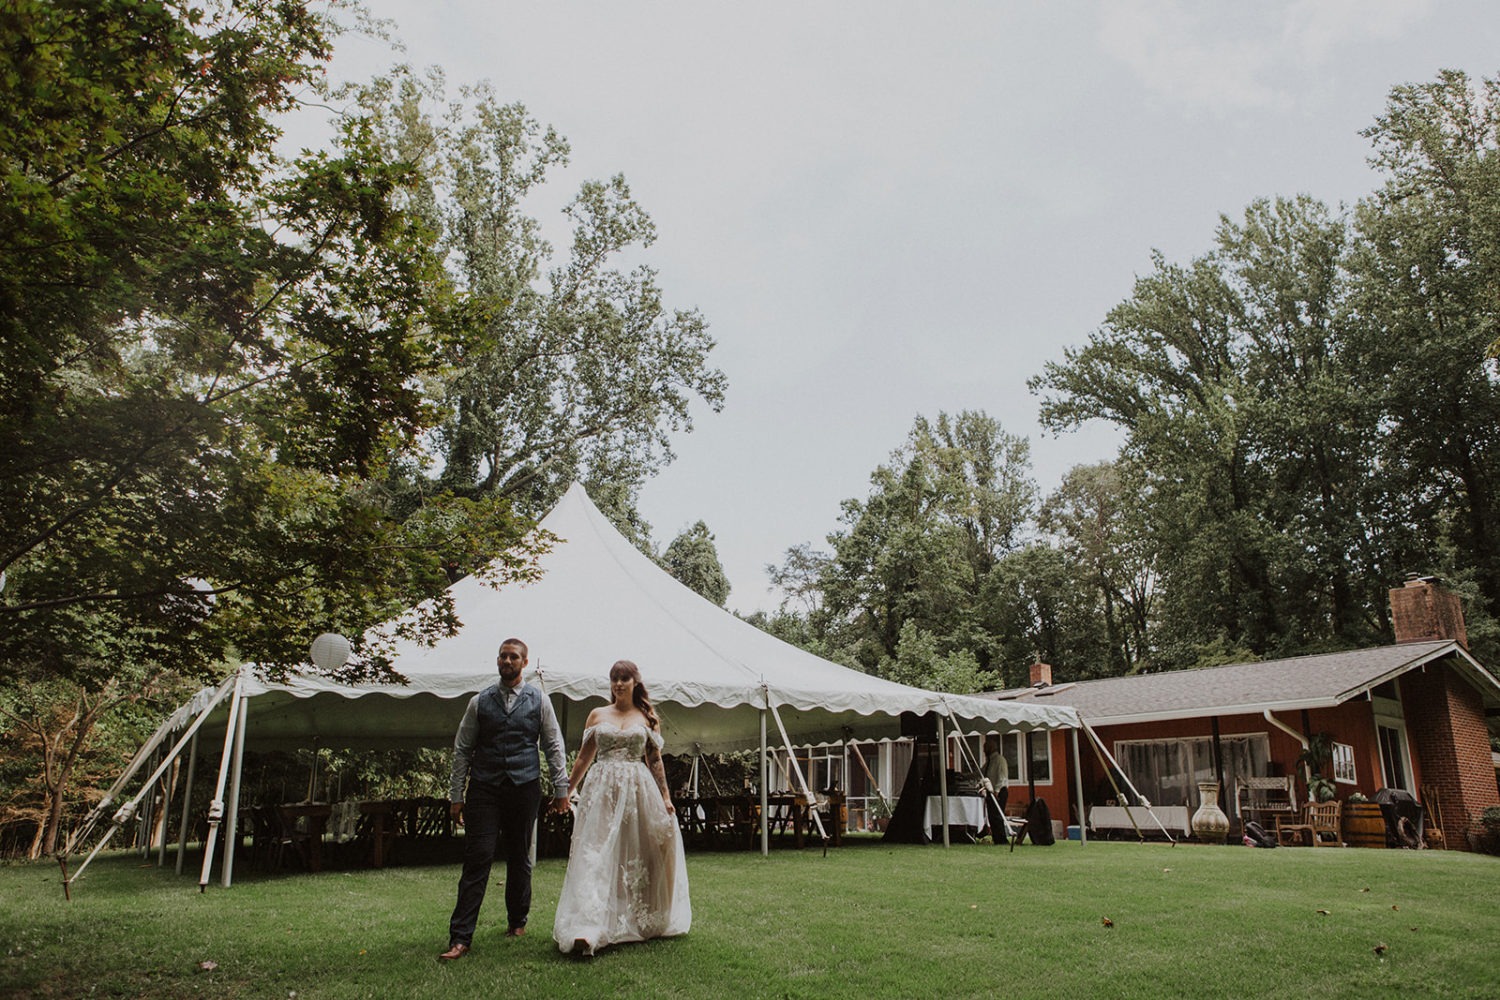 Couple walks by backyard wedding tent